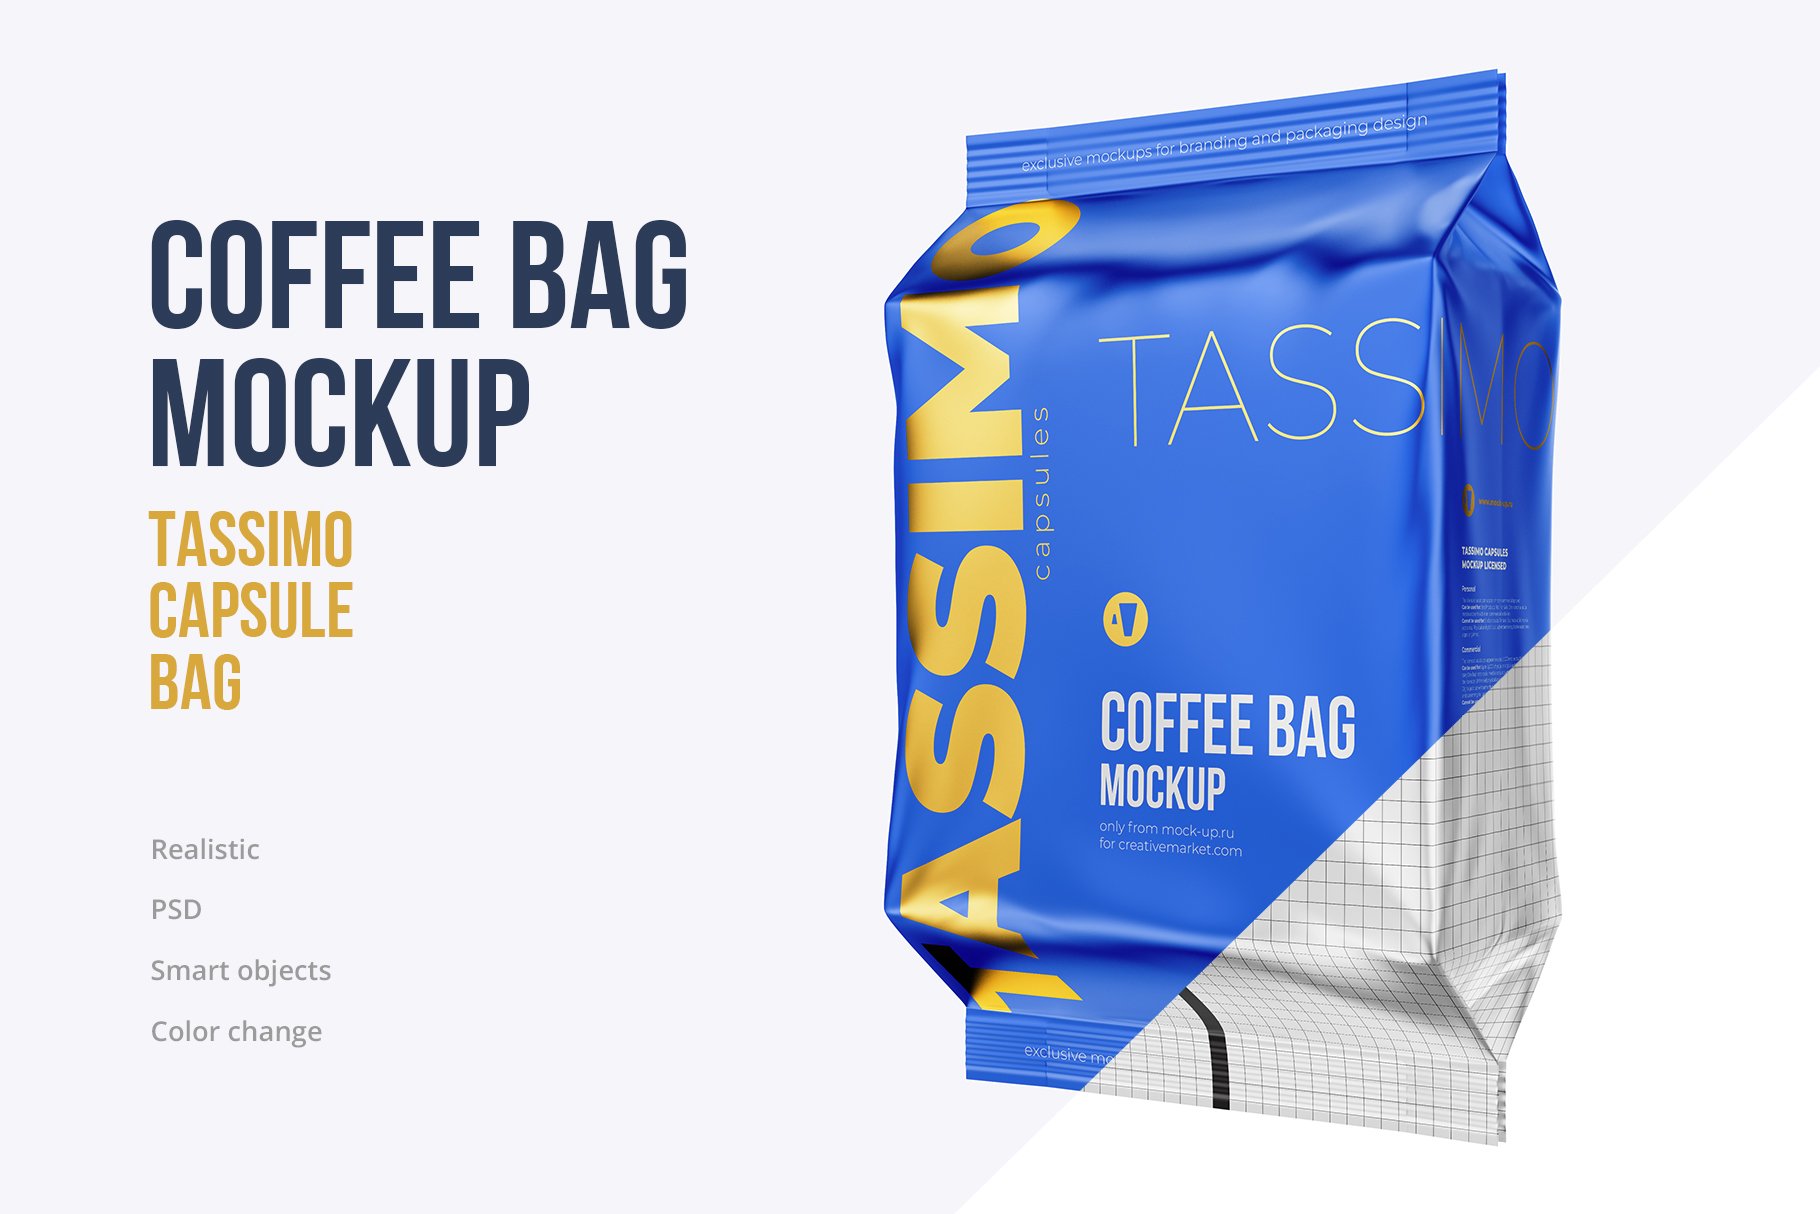 Coffee Bag mockup. Tassimo cover image.